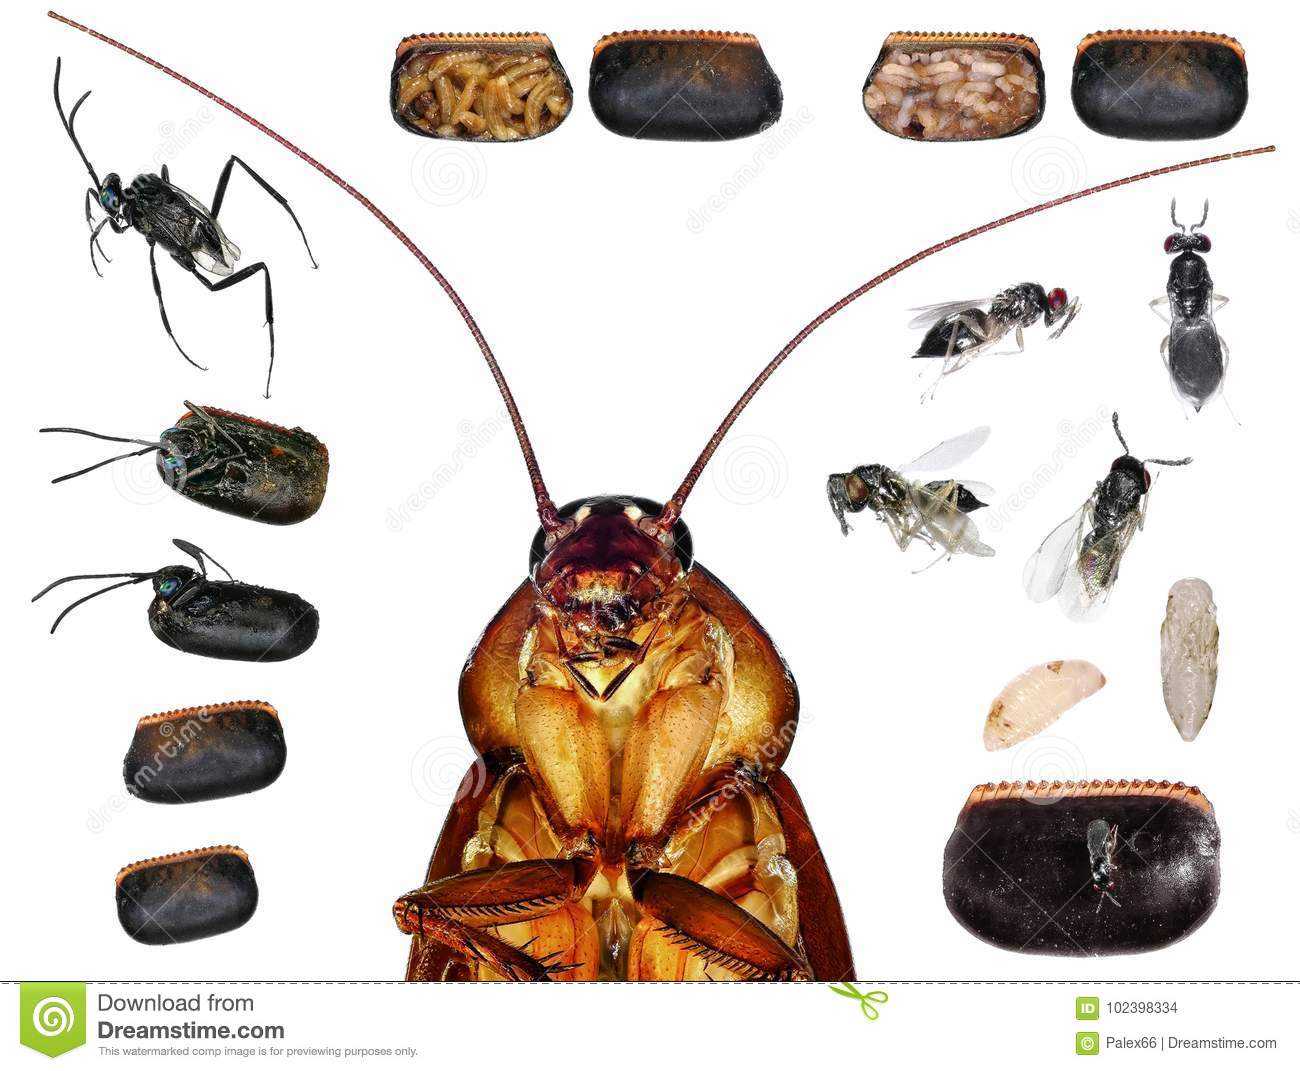 Описание и особенности строения тараканов, их разновидности, питание, размножение и опасность для человека